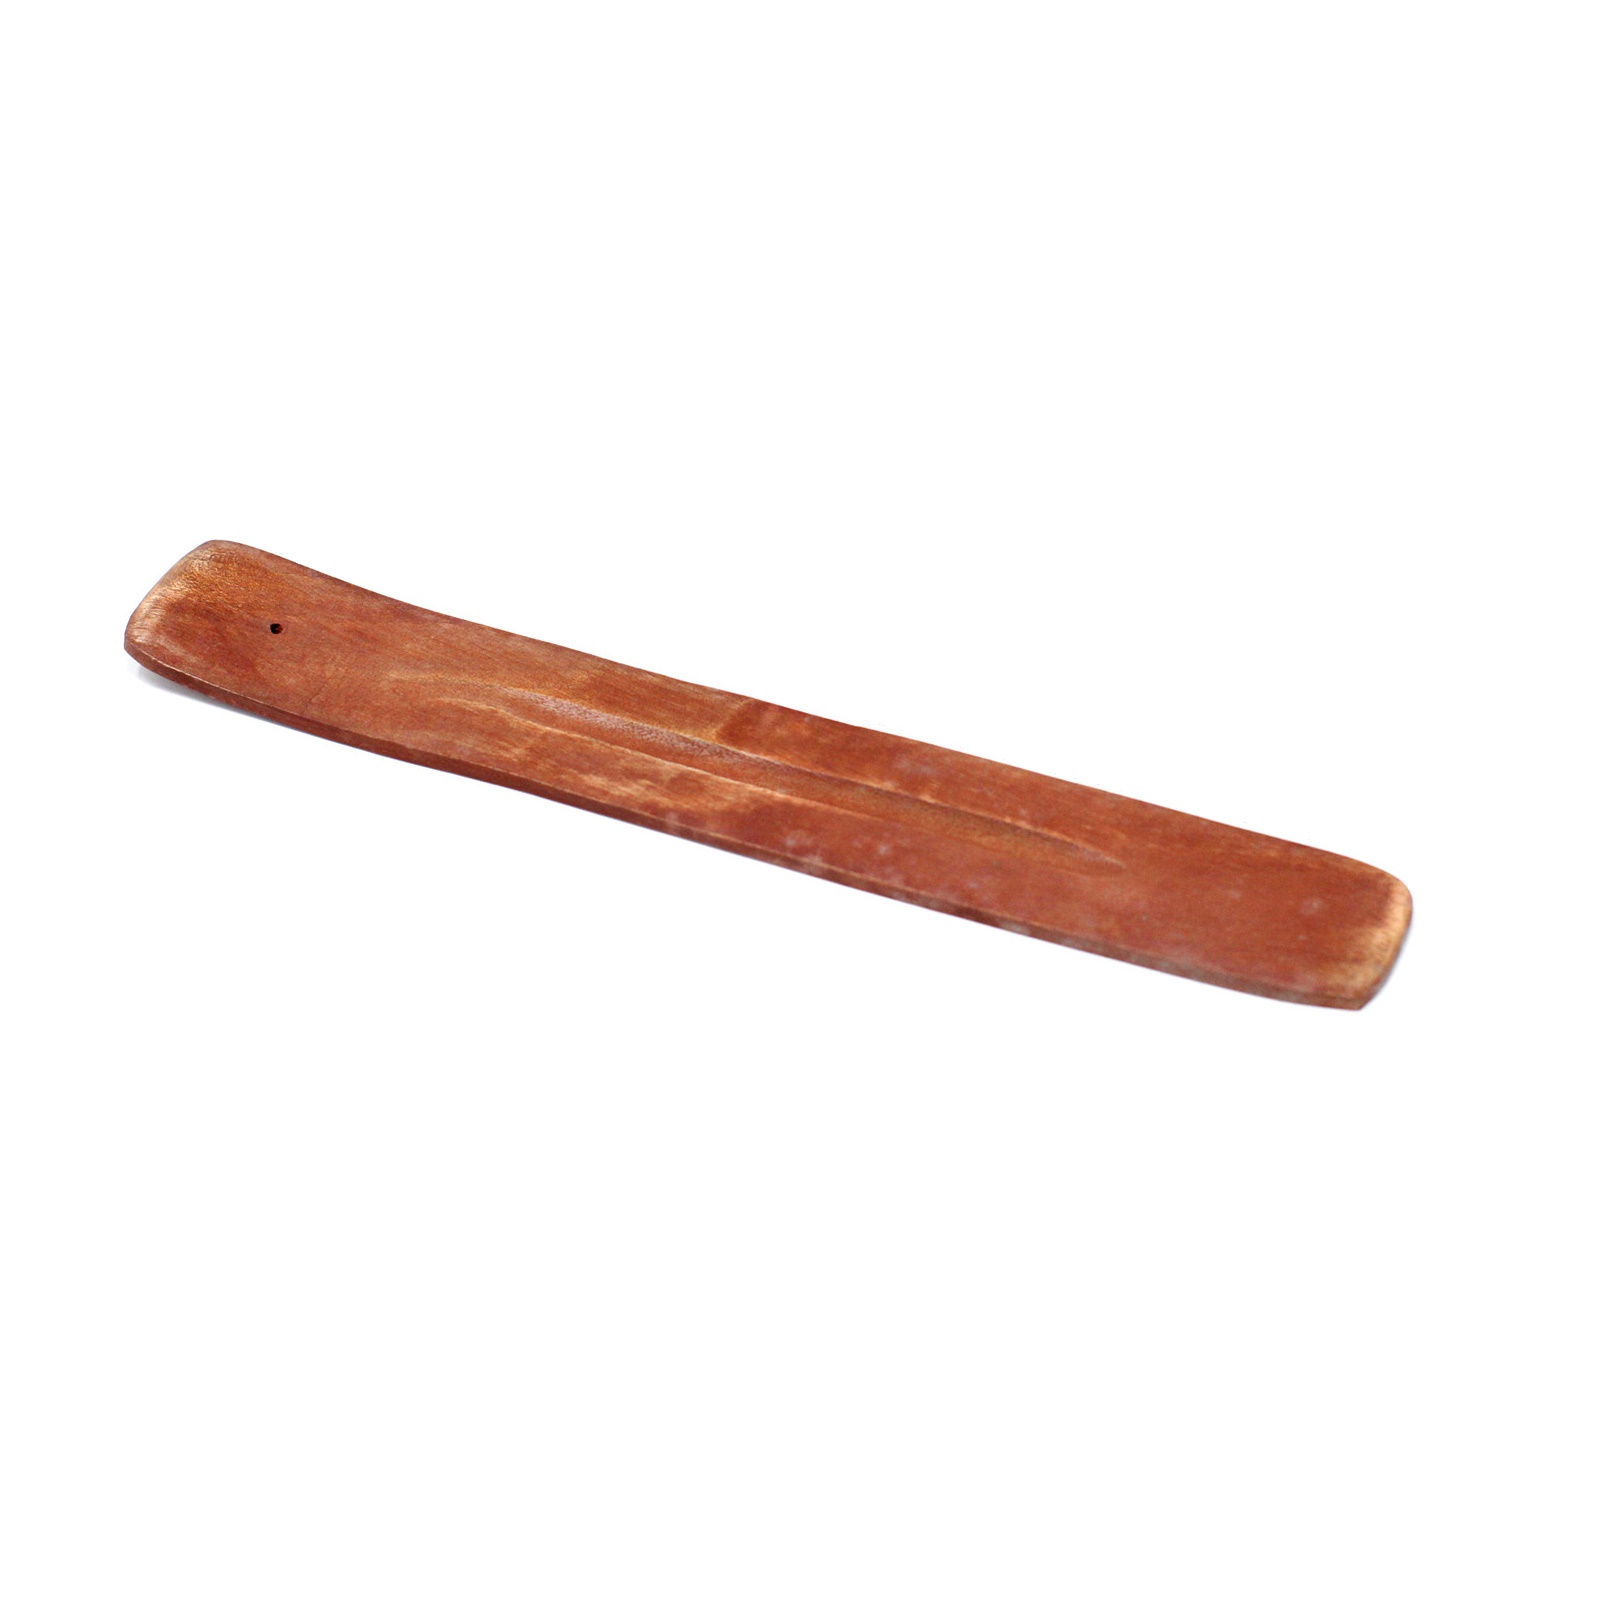 Plain Incense Sticks Ash Catcher Burner & Holder - 255 mm Long